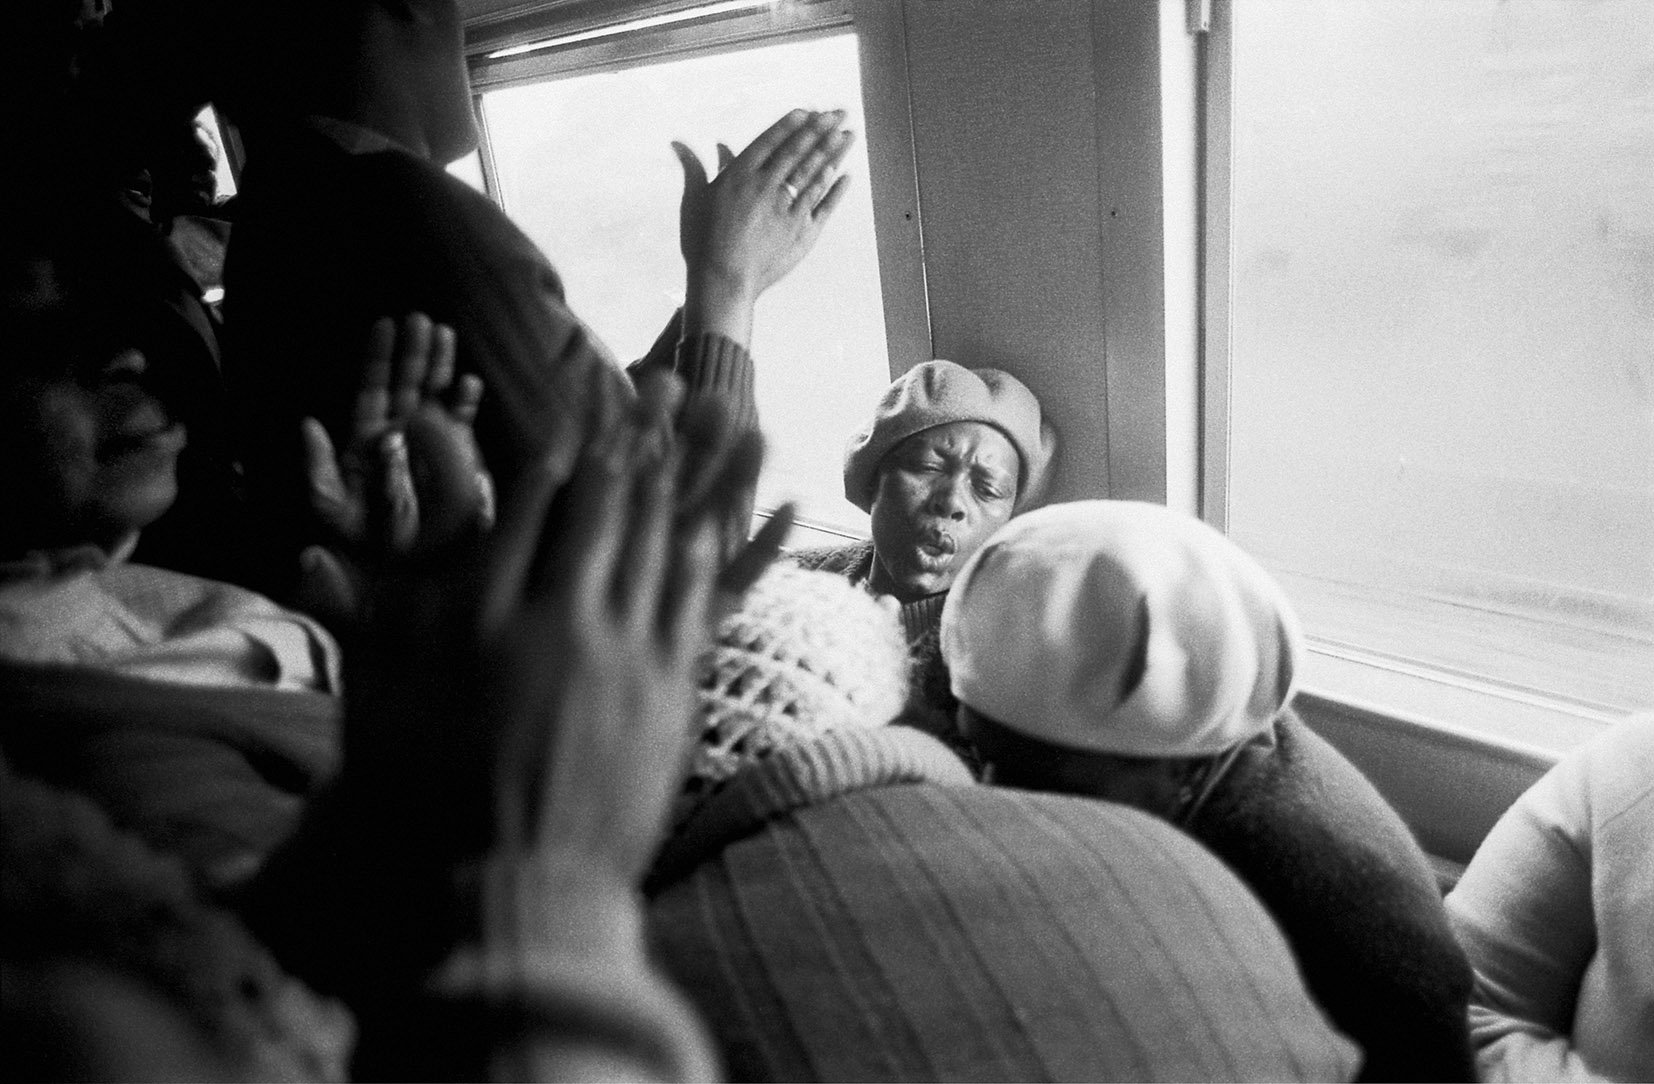  Hands in worship, Johannesburg-Soweto Line/ 1986 